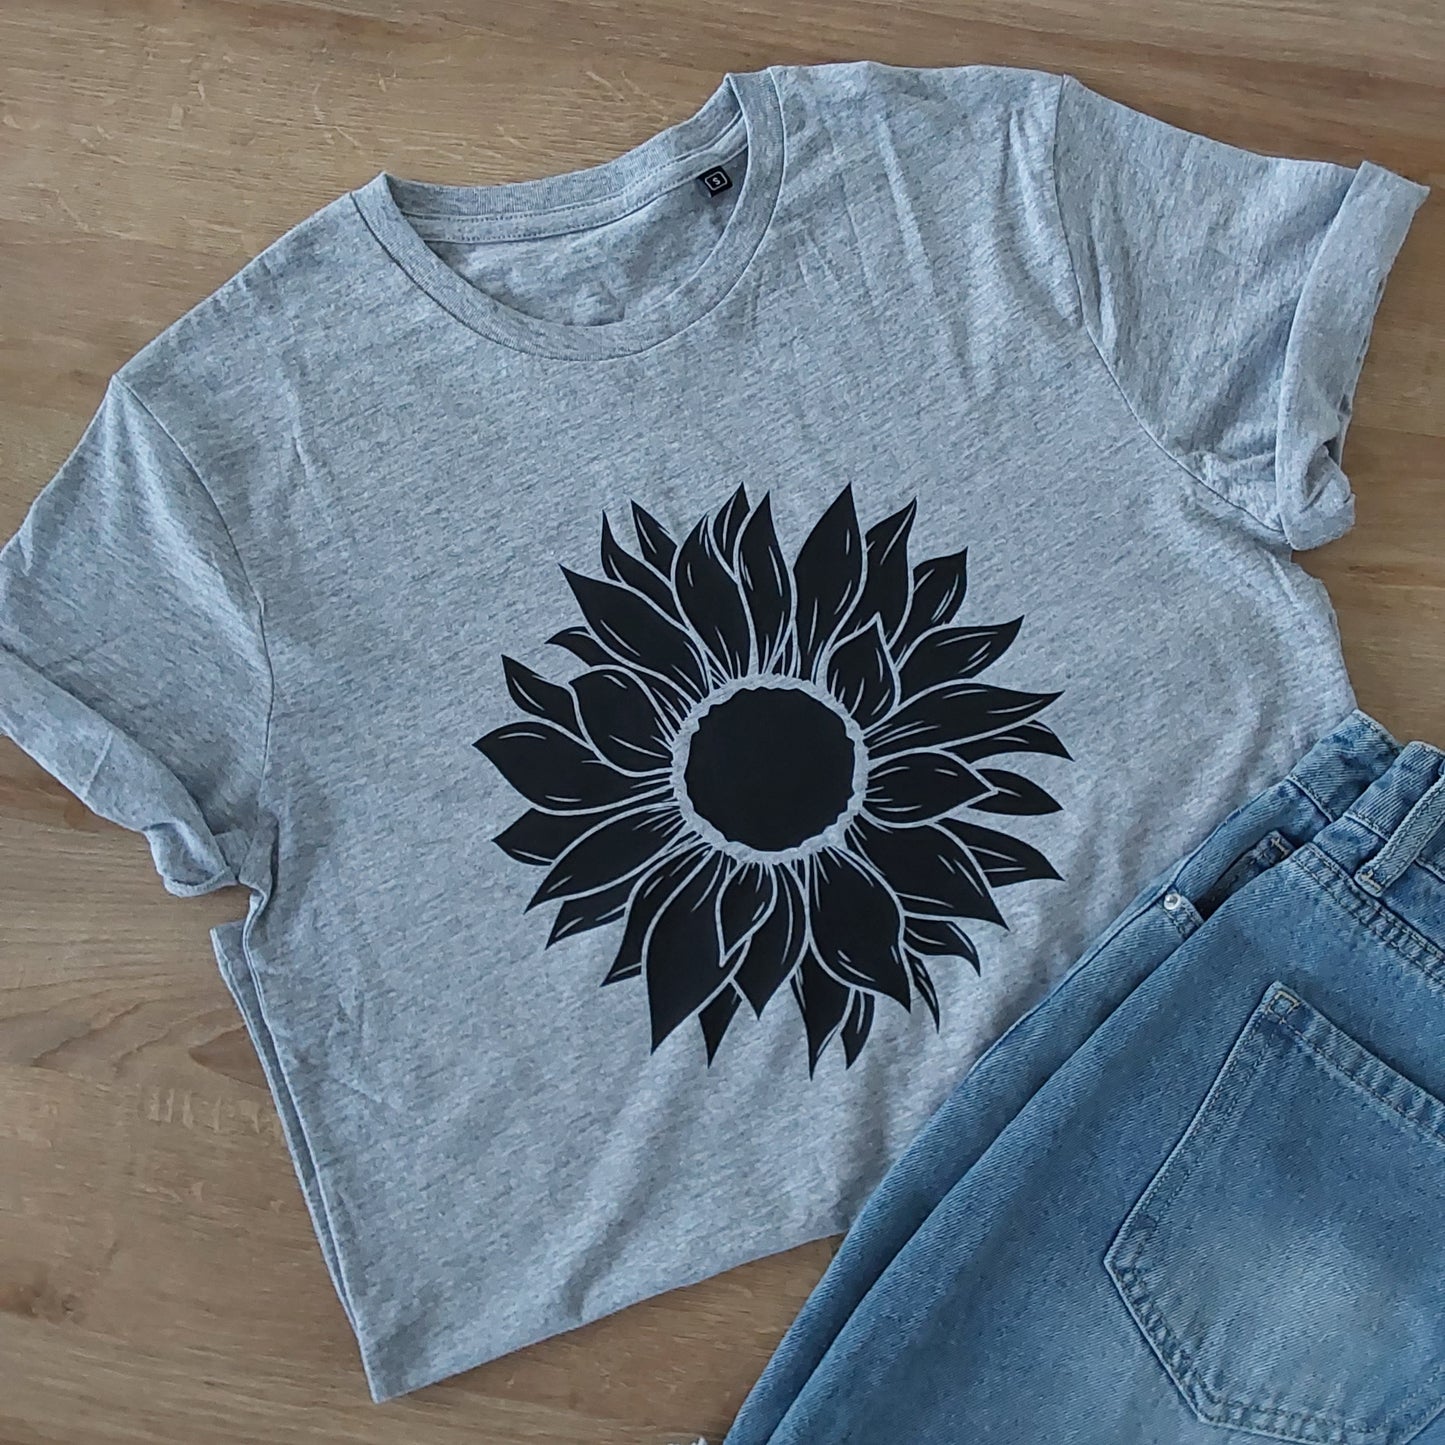 Sunflower t shirt